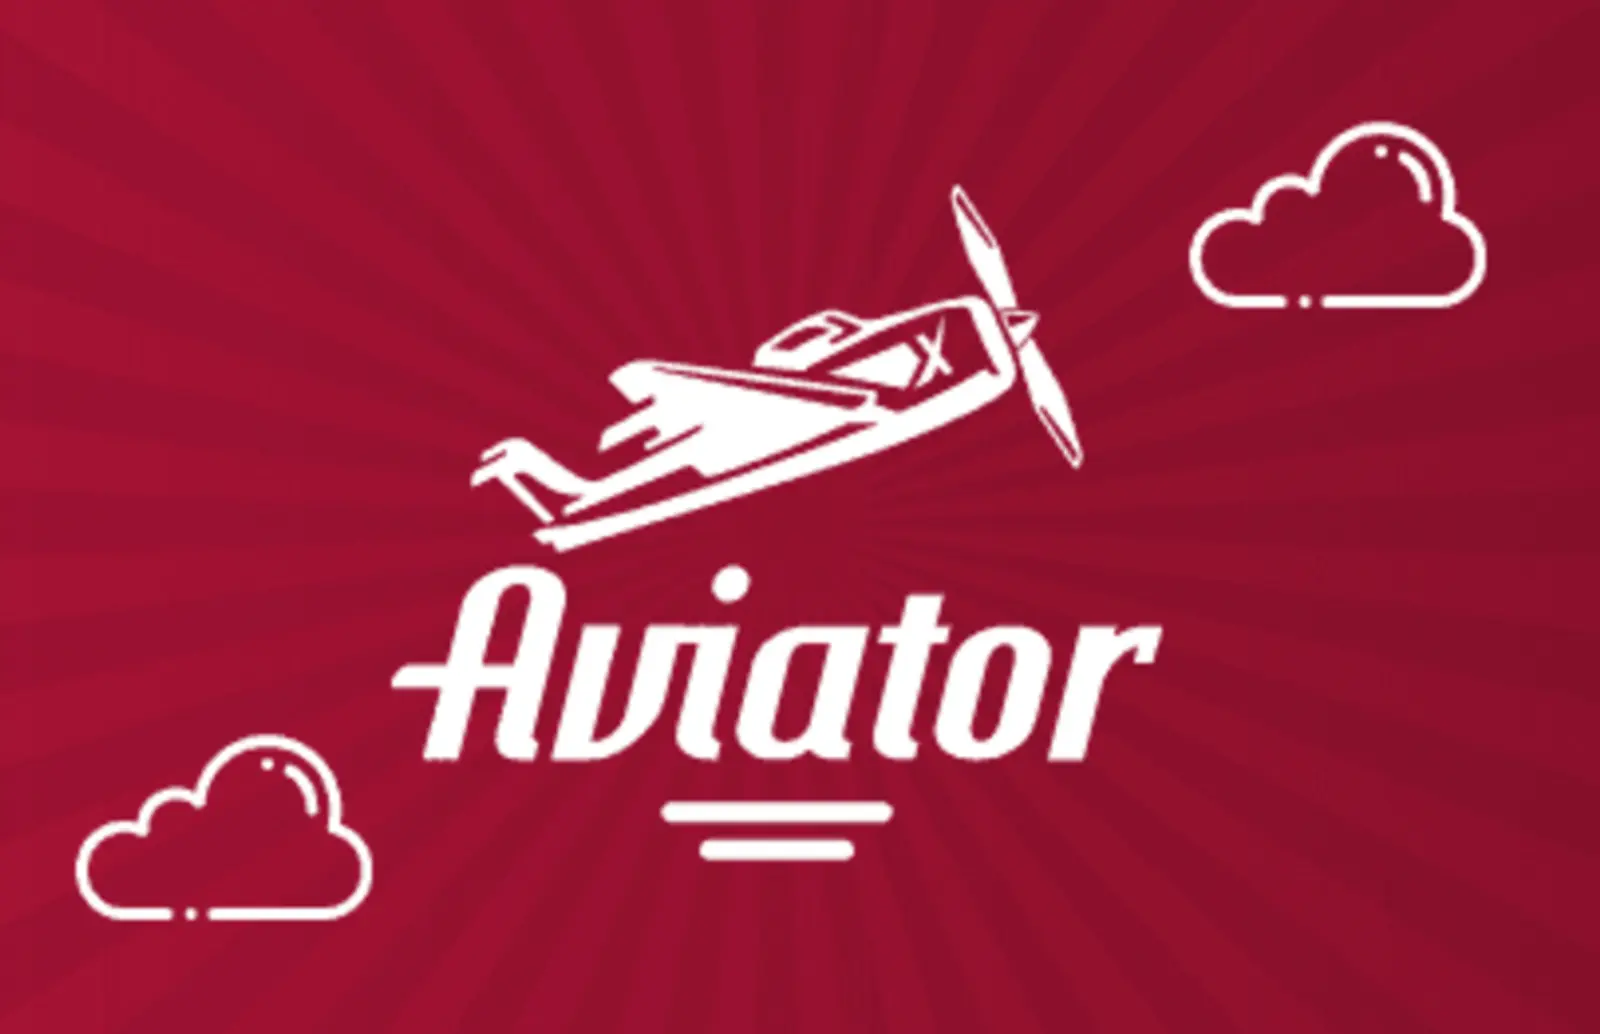 Logotipo de Aviator